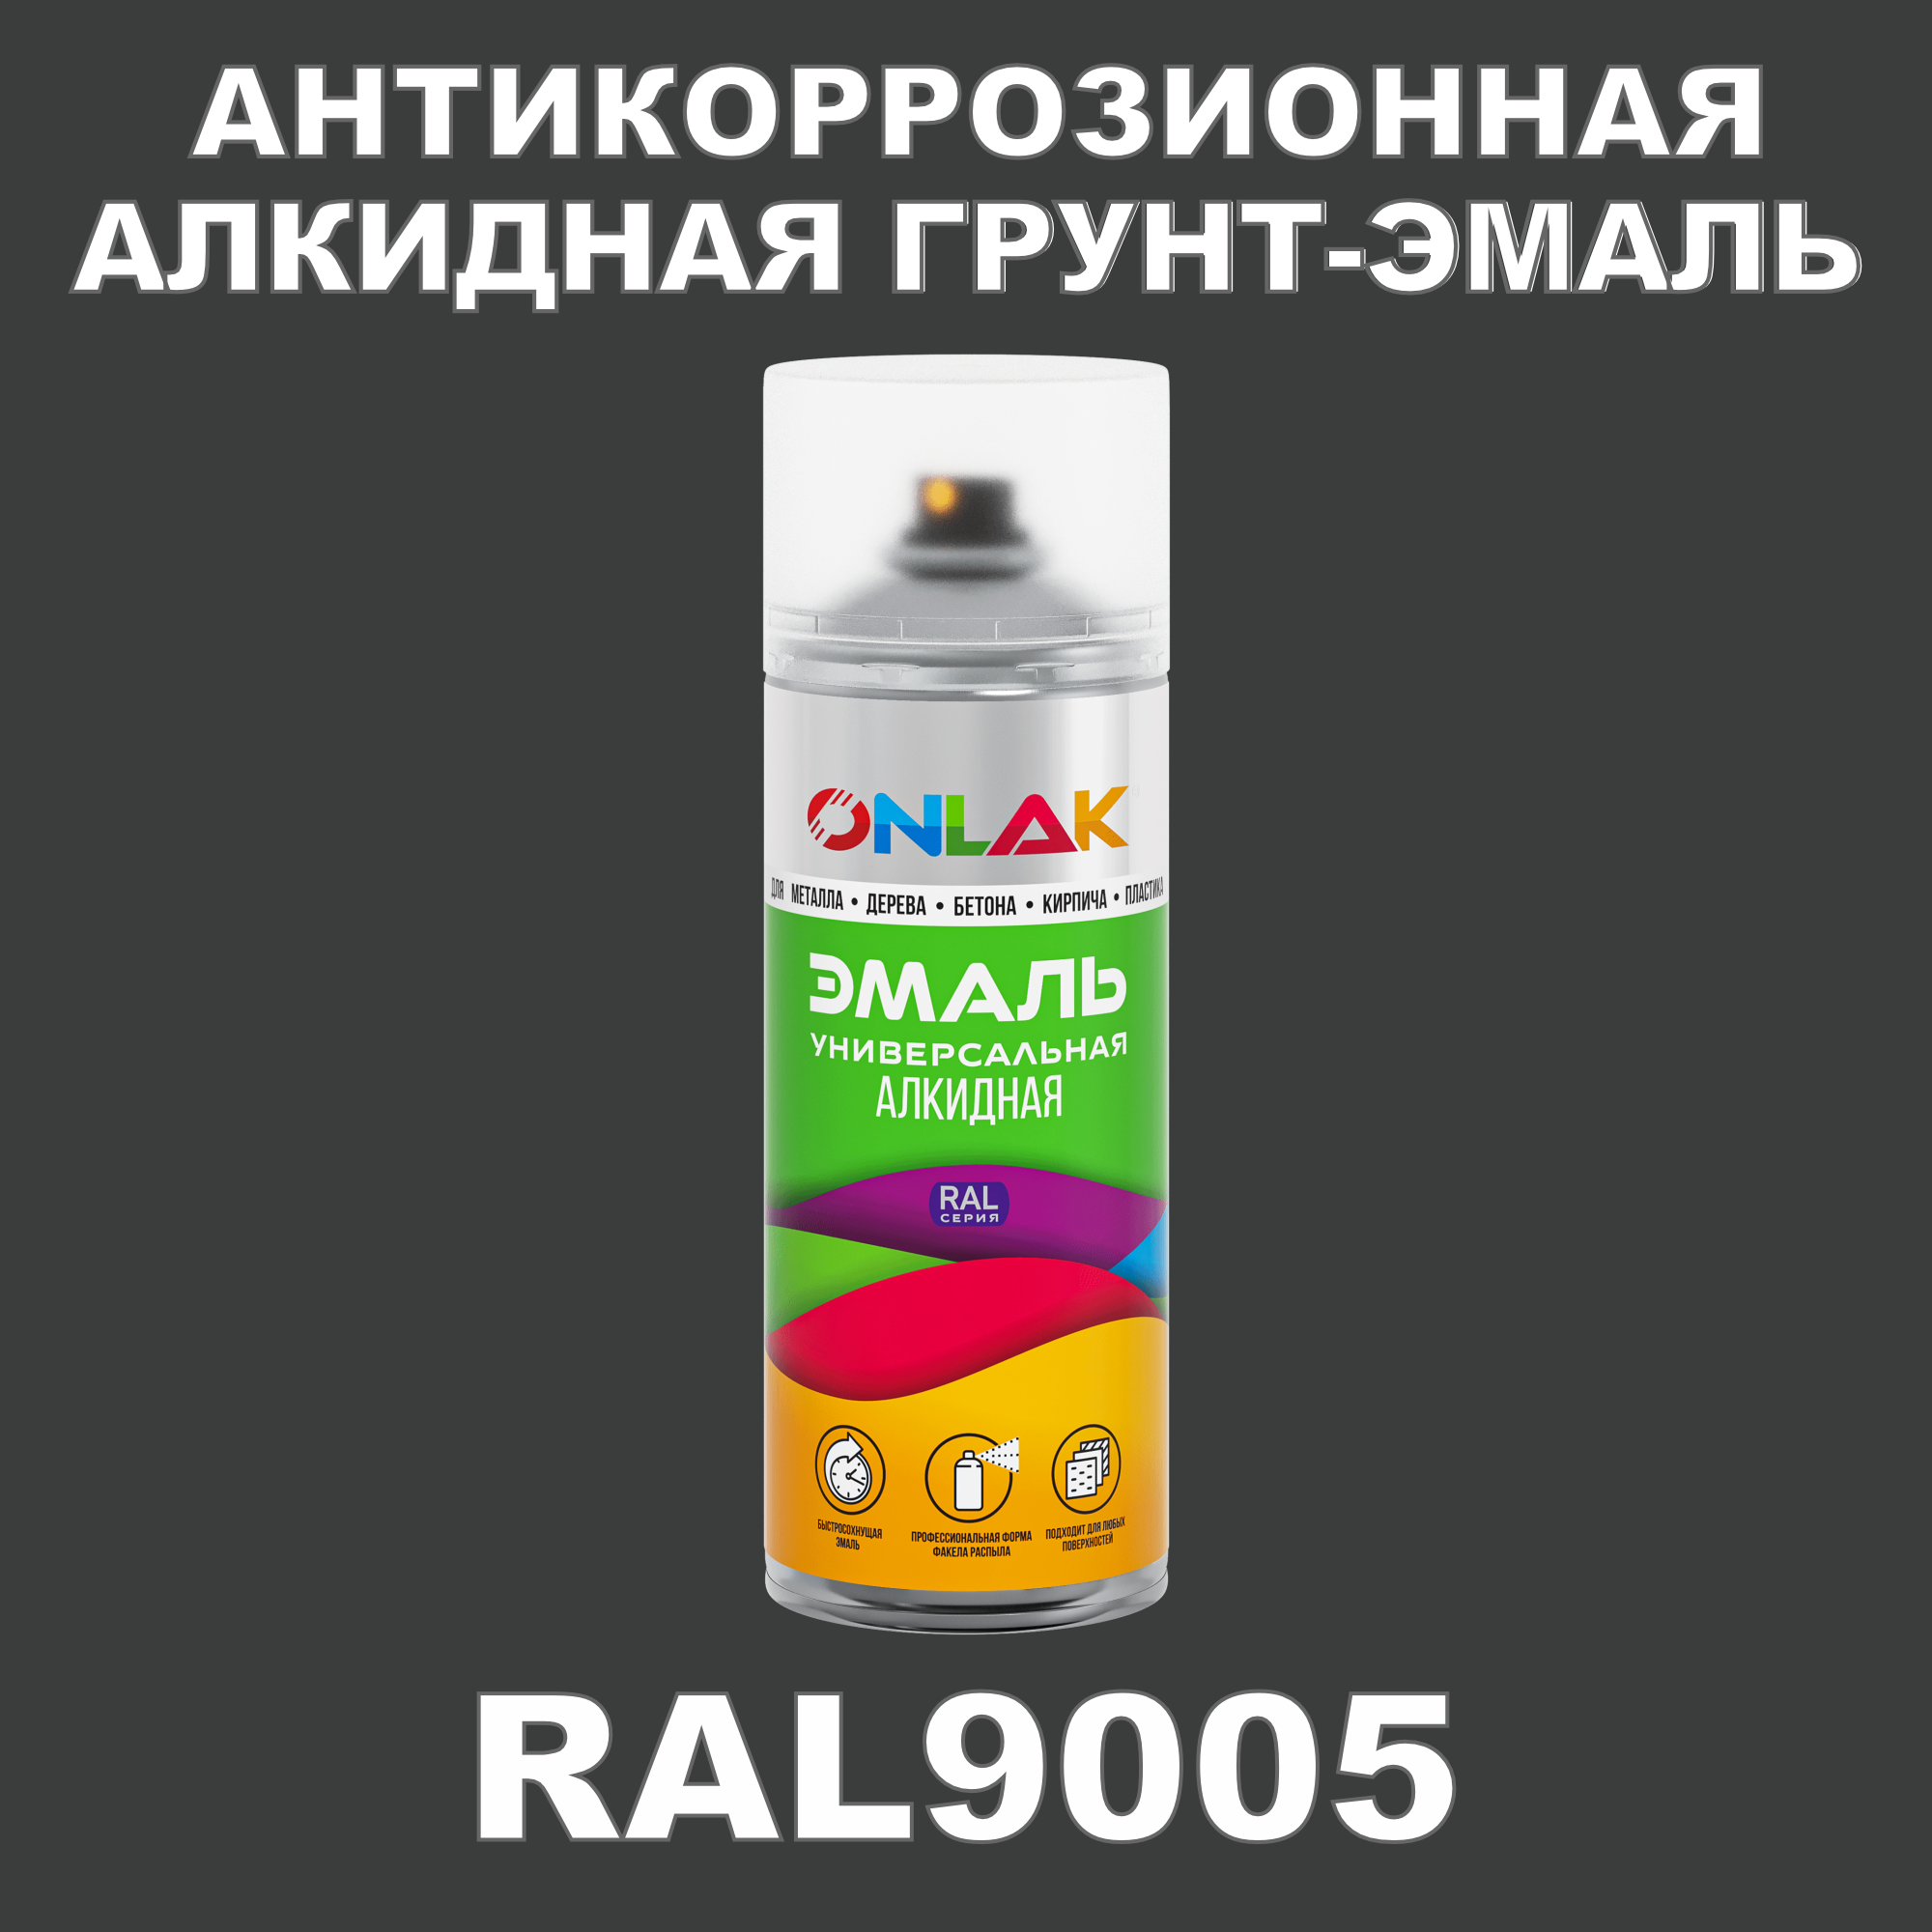 Антикоррозионная грунт-эмаль ONLAK RAL 9005,белый,728 мл грунт эмаль slaven 3в1 быстросохнущий антикоррозионный белый 3 2 кг 92371